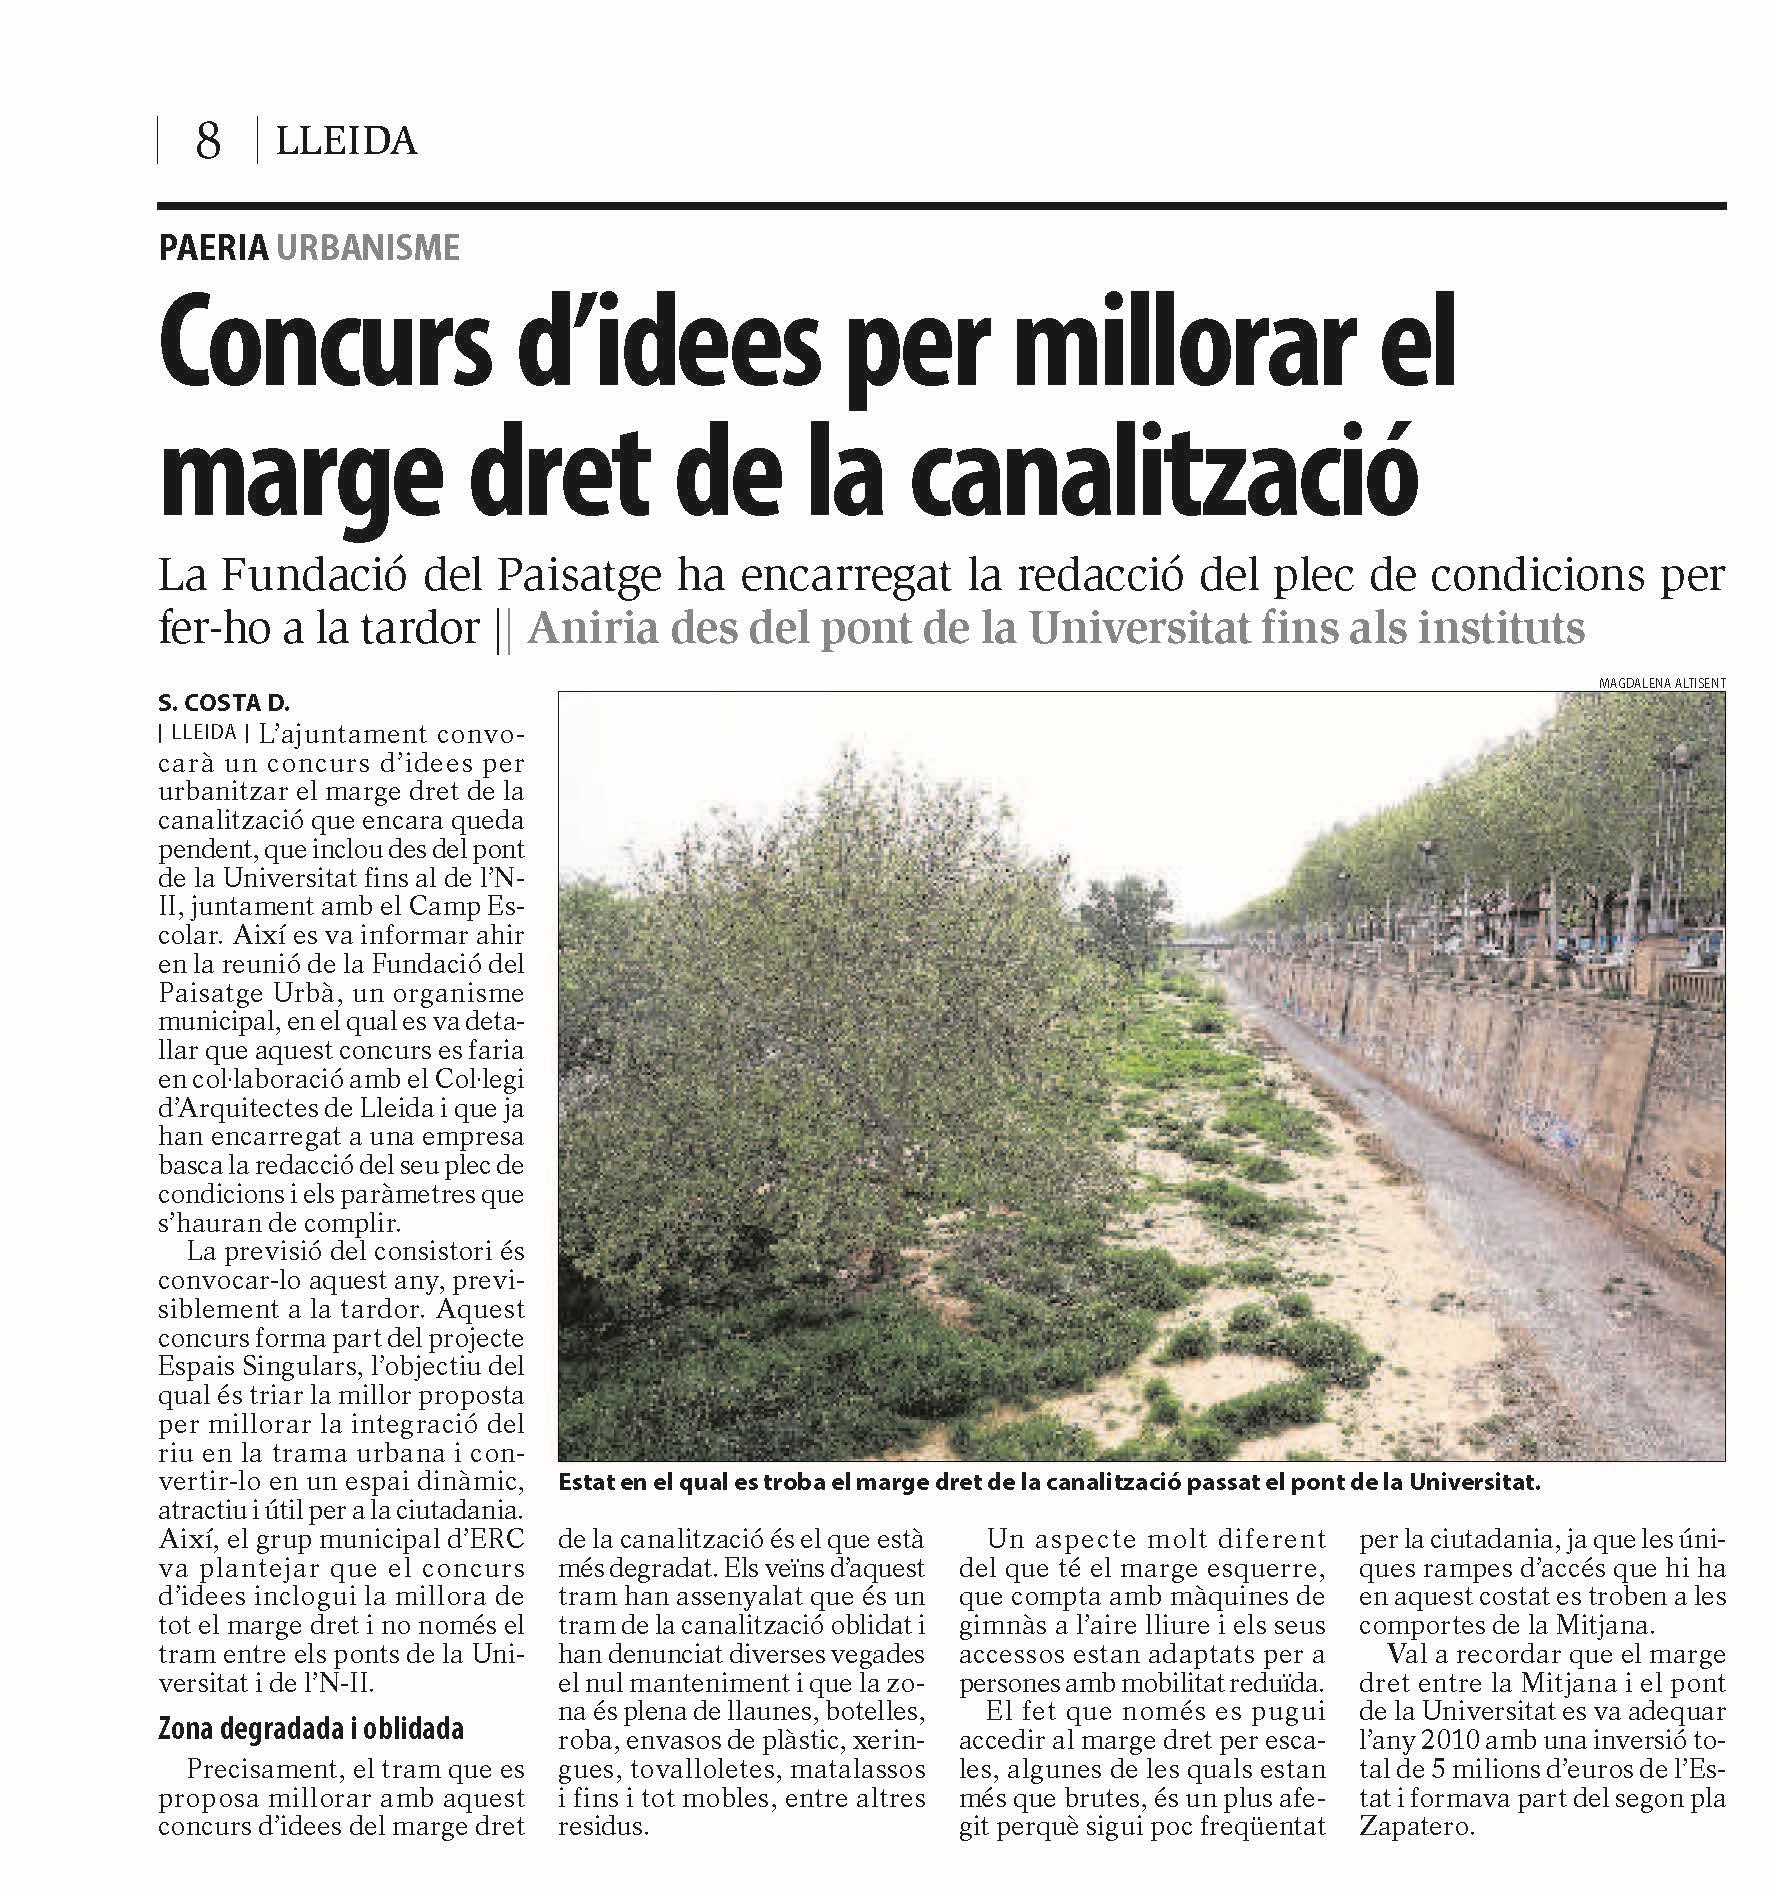 CONCURS D’IDEES PER MILLORAR EL MARGE DRET DE LA  CANALITZACIÓ DEL RIU A LLEIDA